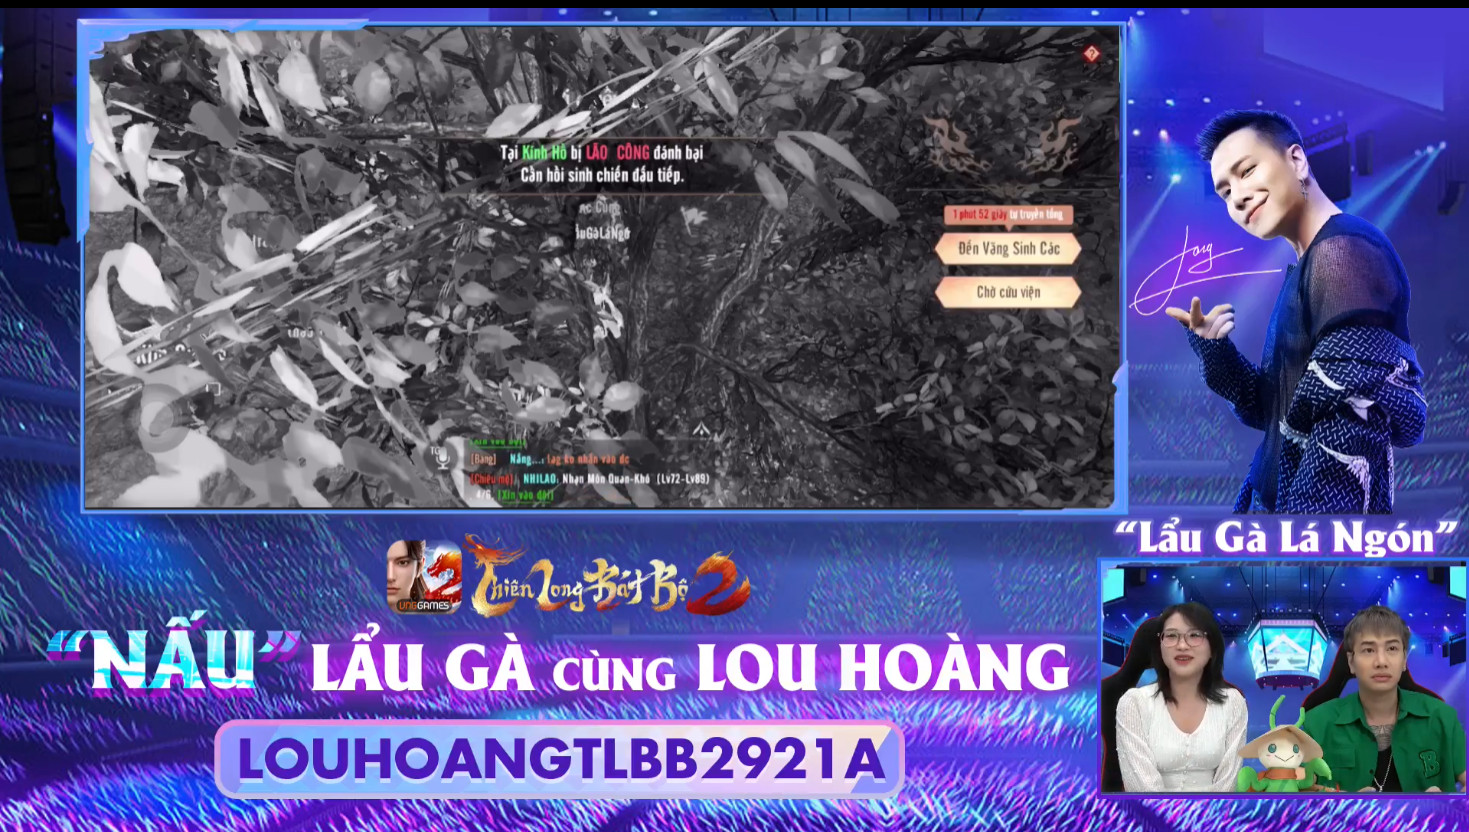 Lou Hoàng giao lưu cùng Thiên Long Bát Bộ 2 VNG: “Chơi game là nguồn cảm hứng để viết nhạc” - Ảnh 4.